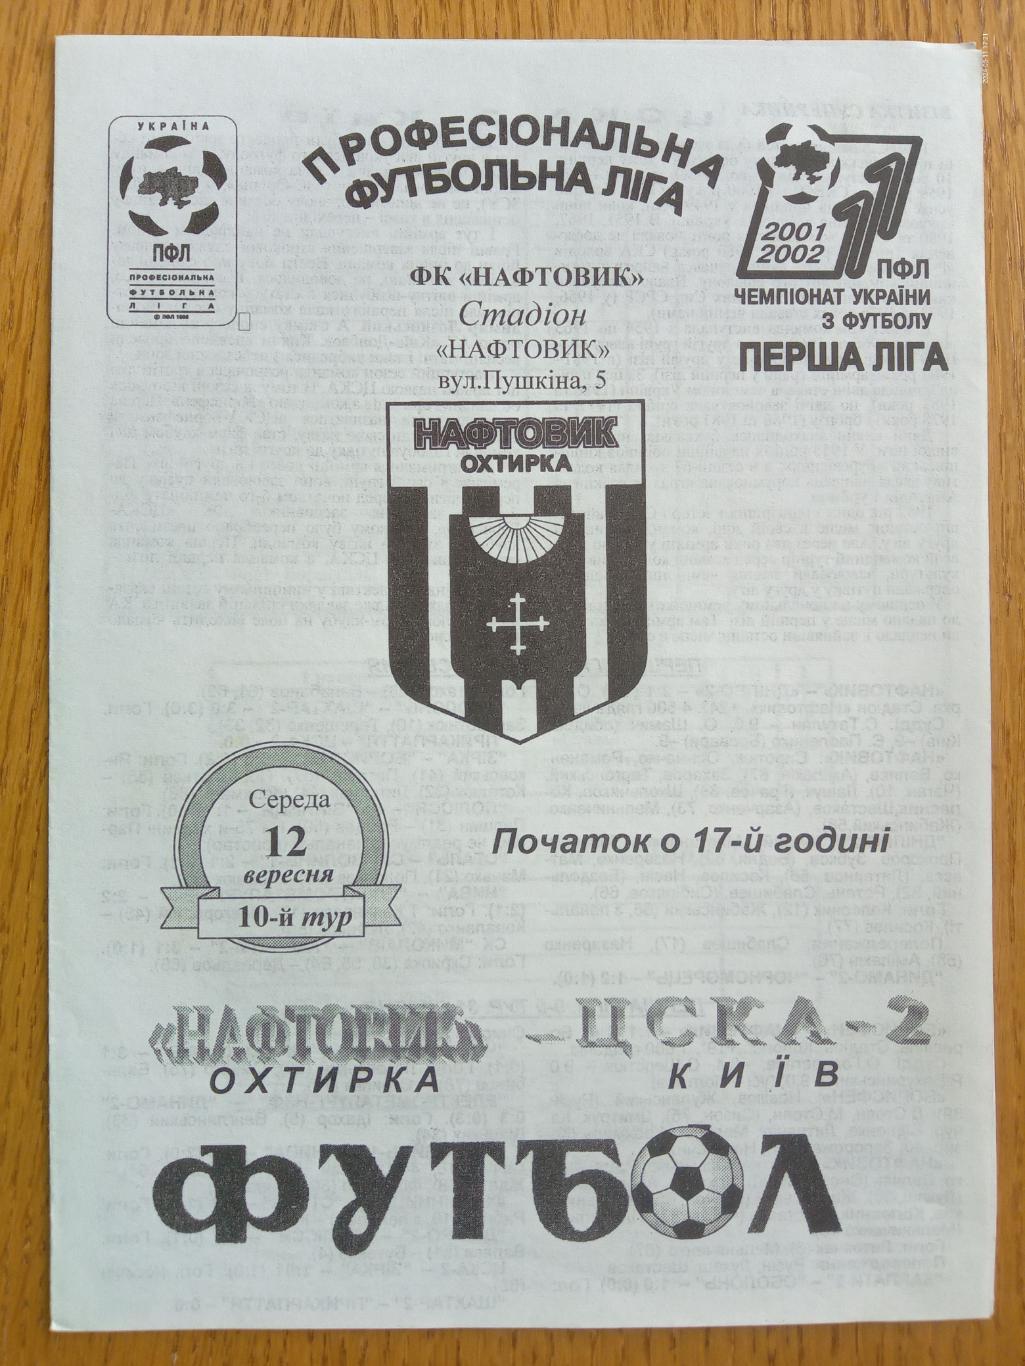 Нафтовик Охтирка - ЦСКА 2 Київ. 12.09.2001.#.м.